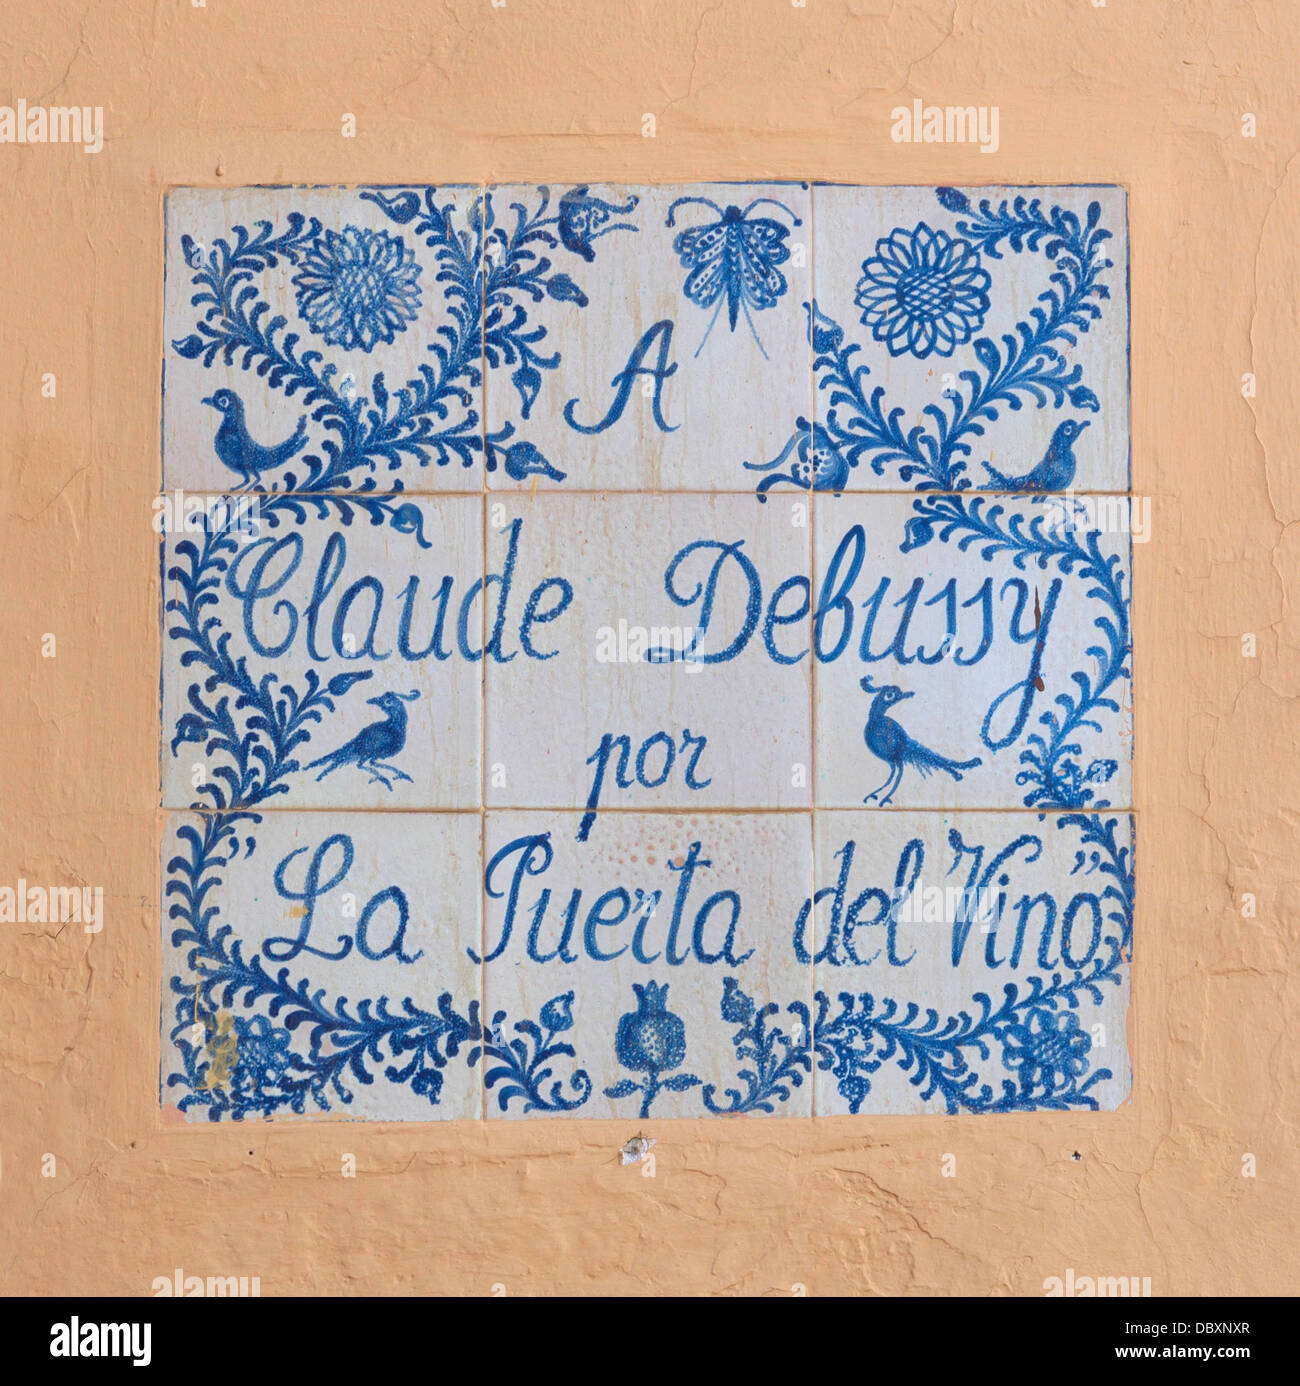 Omaggio a Claude Debussy, il ricordo del pianoforte prélude chiamato dopo il 'Puerta del vino', Alhambra di Granada, Spagna. Foto Stock